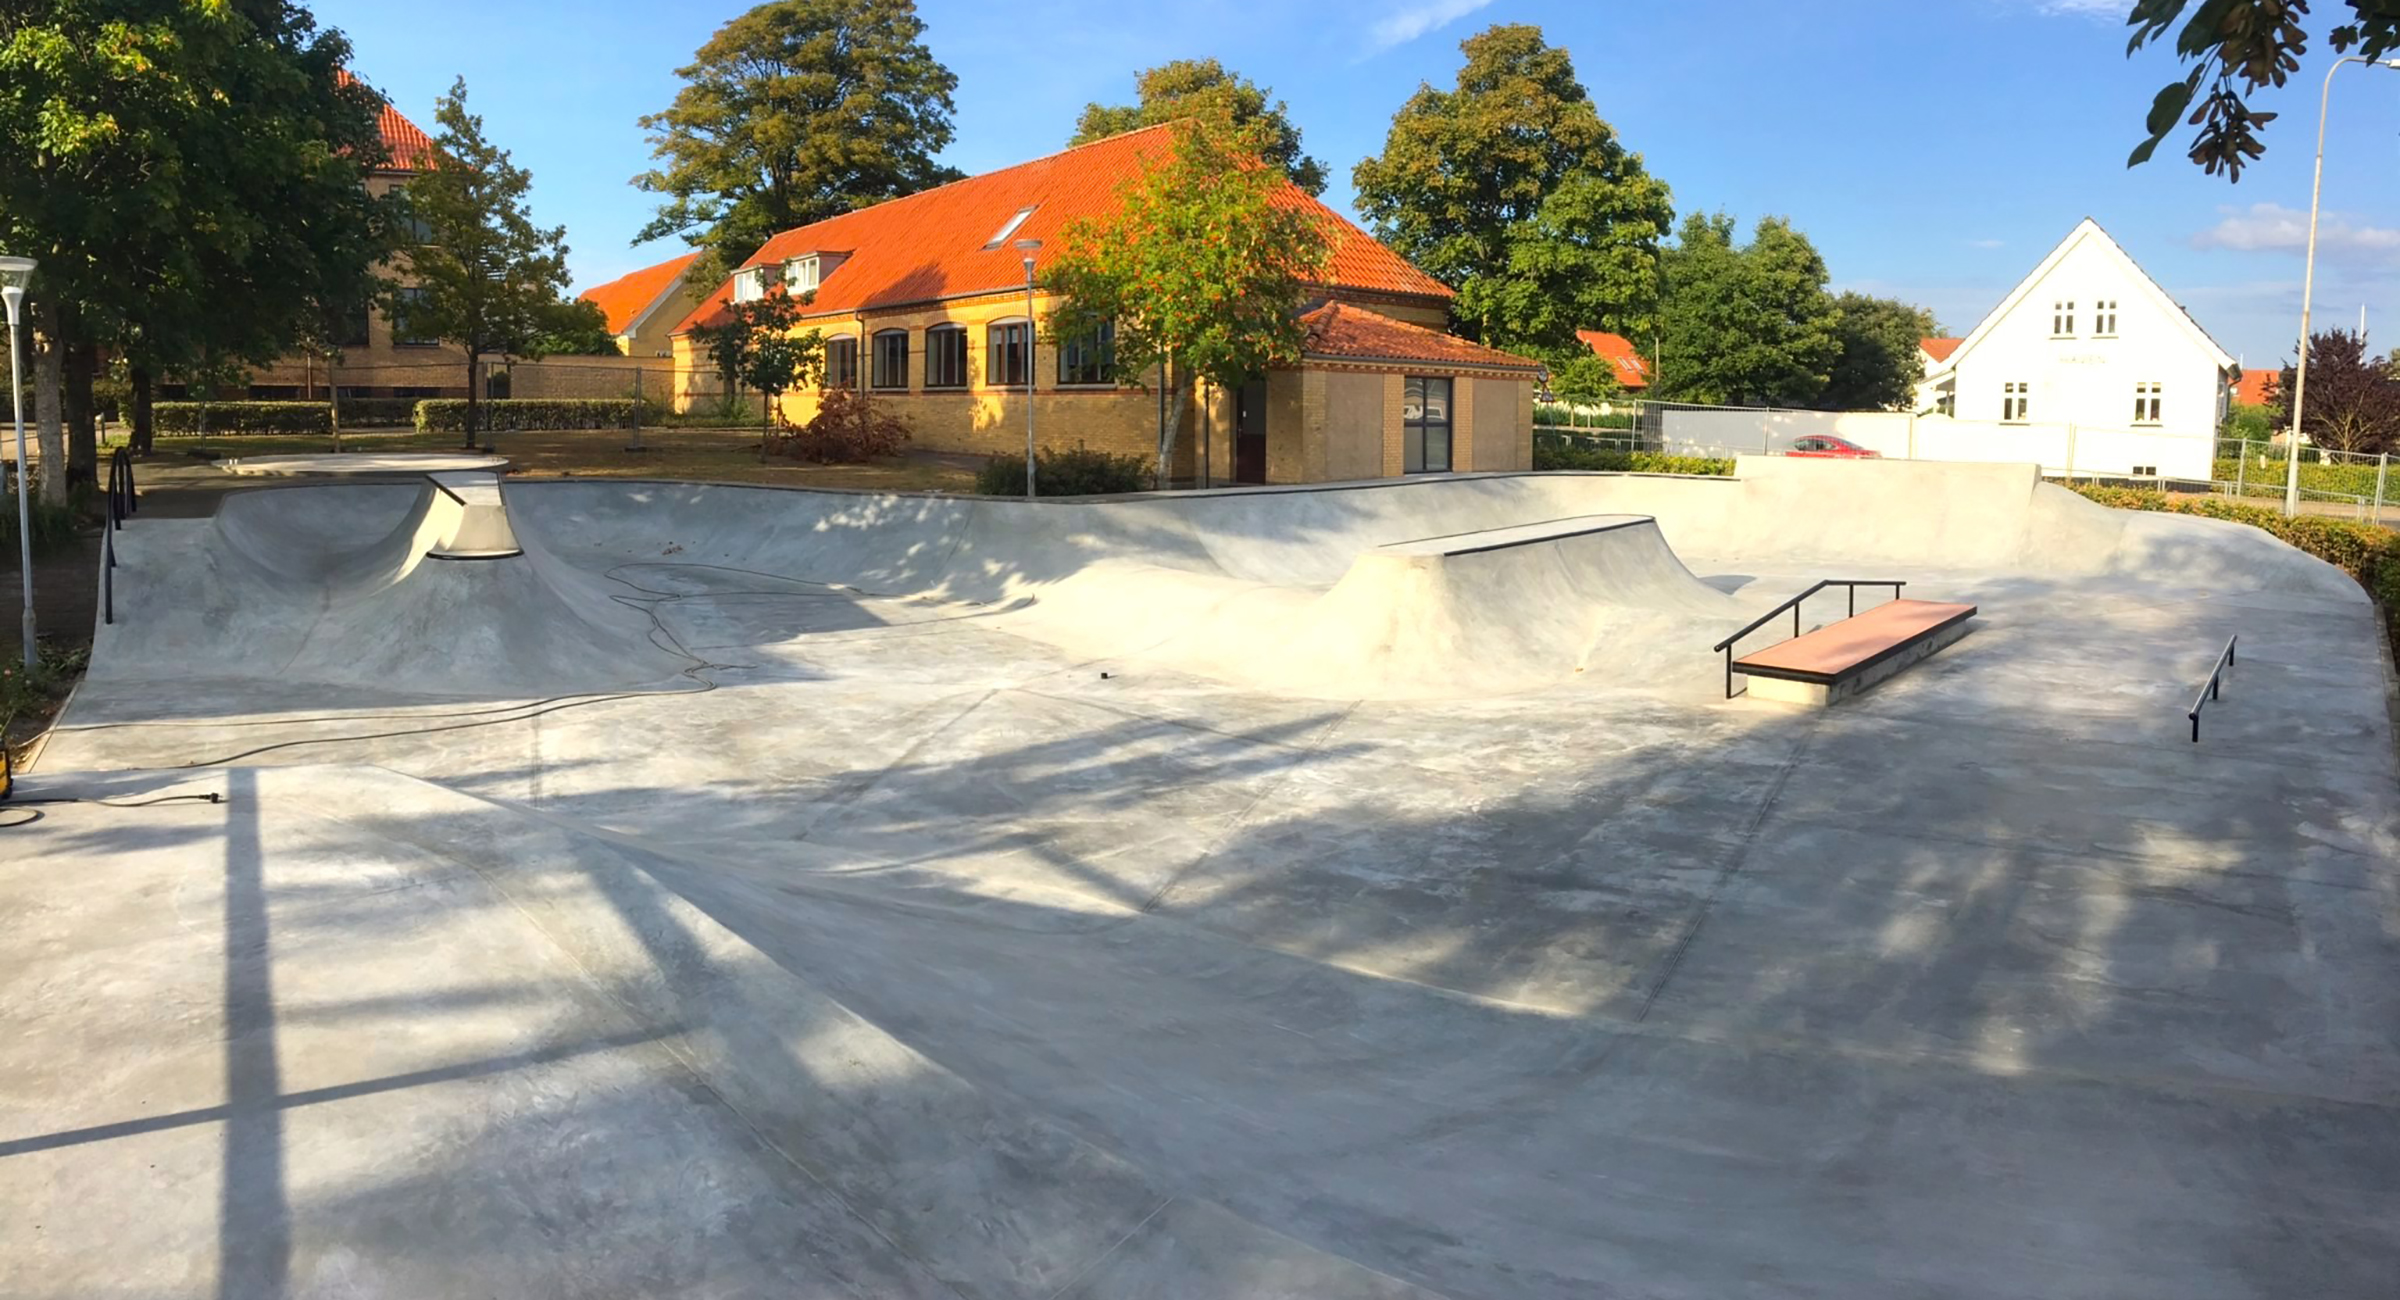 Et overbliksbillede af en skatepark i beton foran en gul bygning